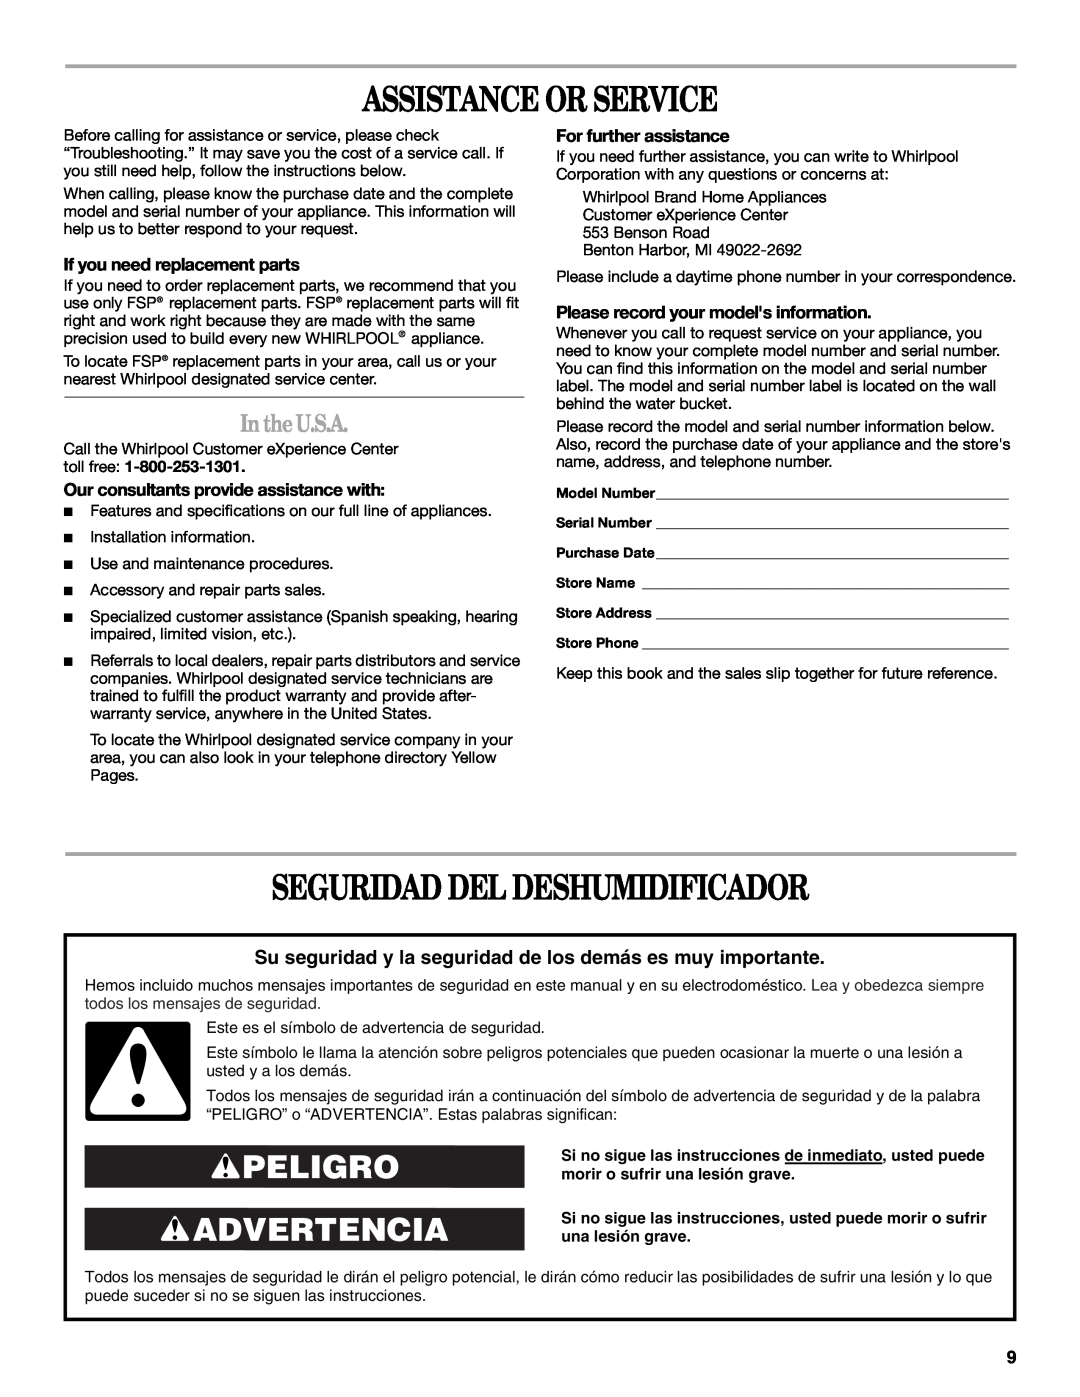 Whirlpool AD35DSS0 manual Assistance Or Service, Seguridad Del Deshumidificador, Peligro Advertencia, In theU.S.A 